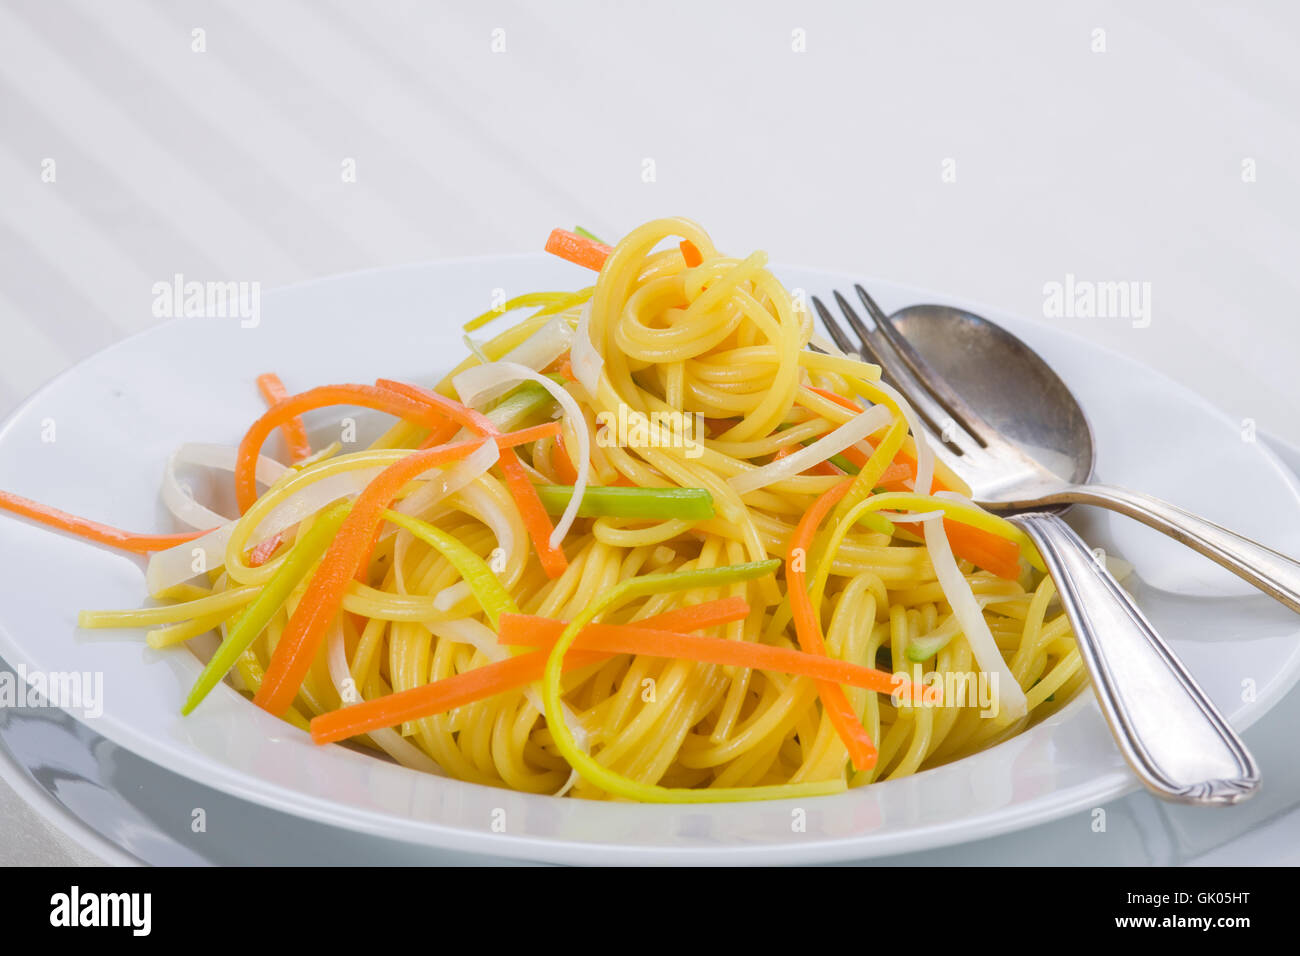 vegetable pasta Stock Photo